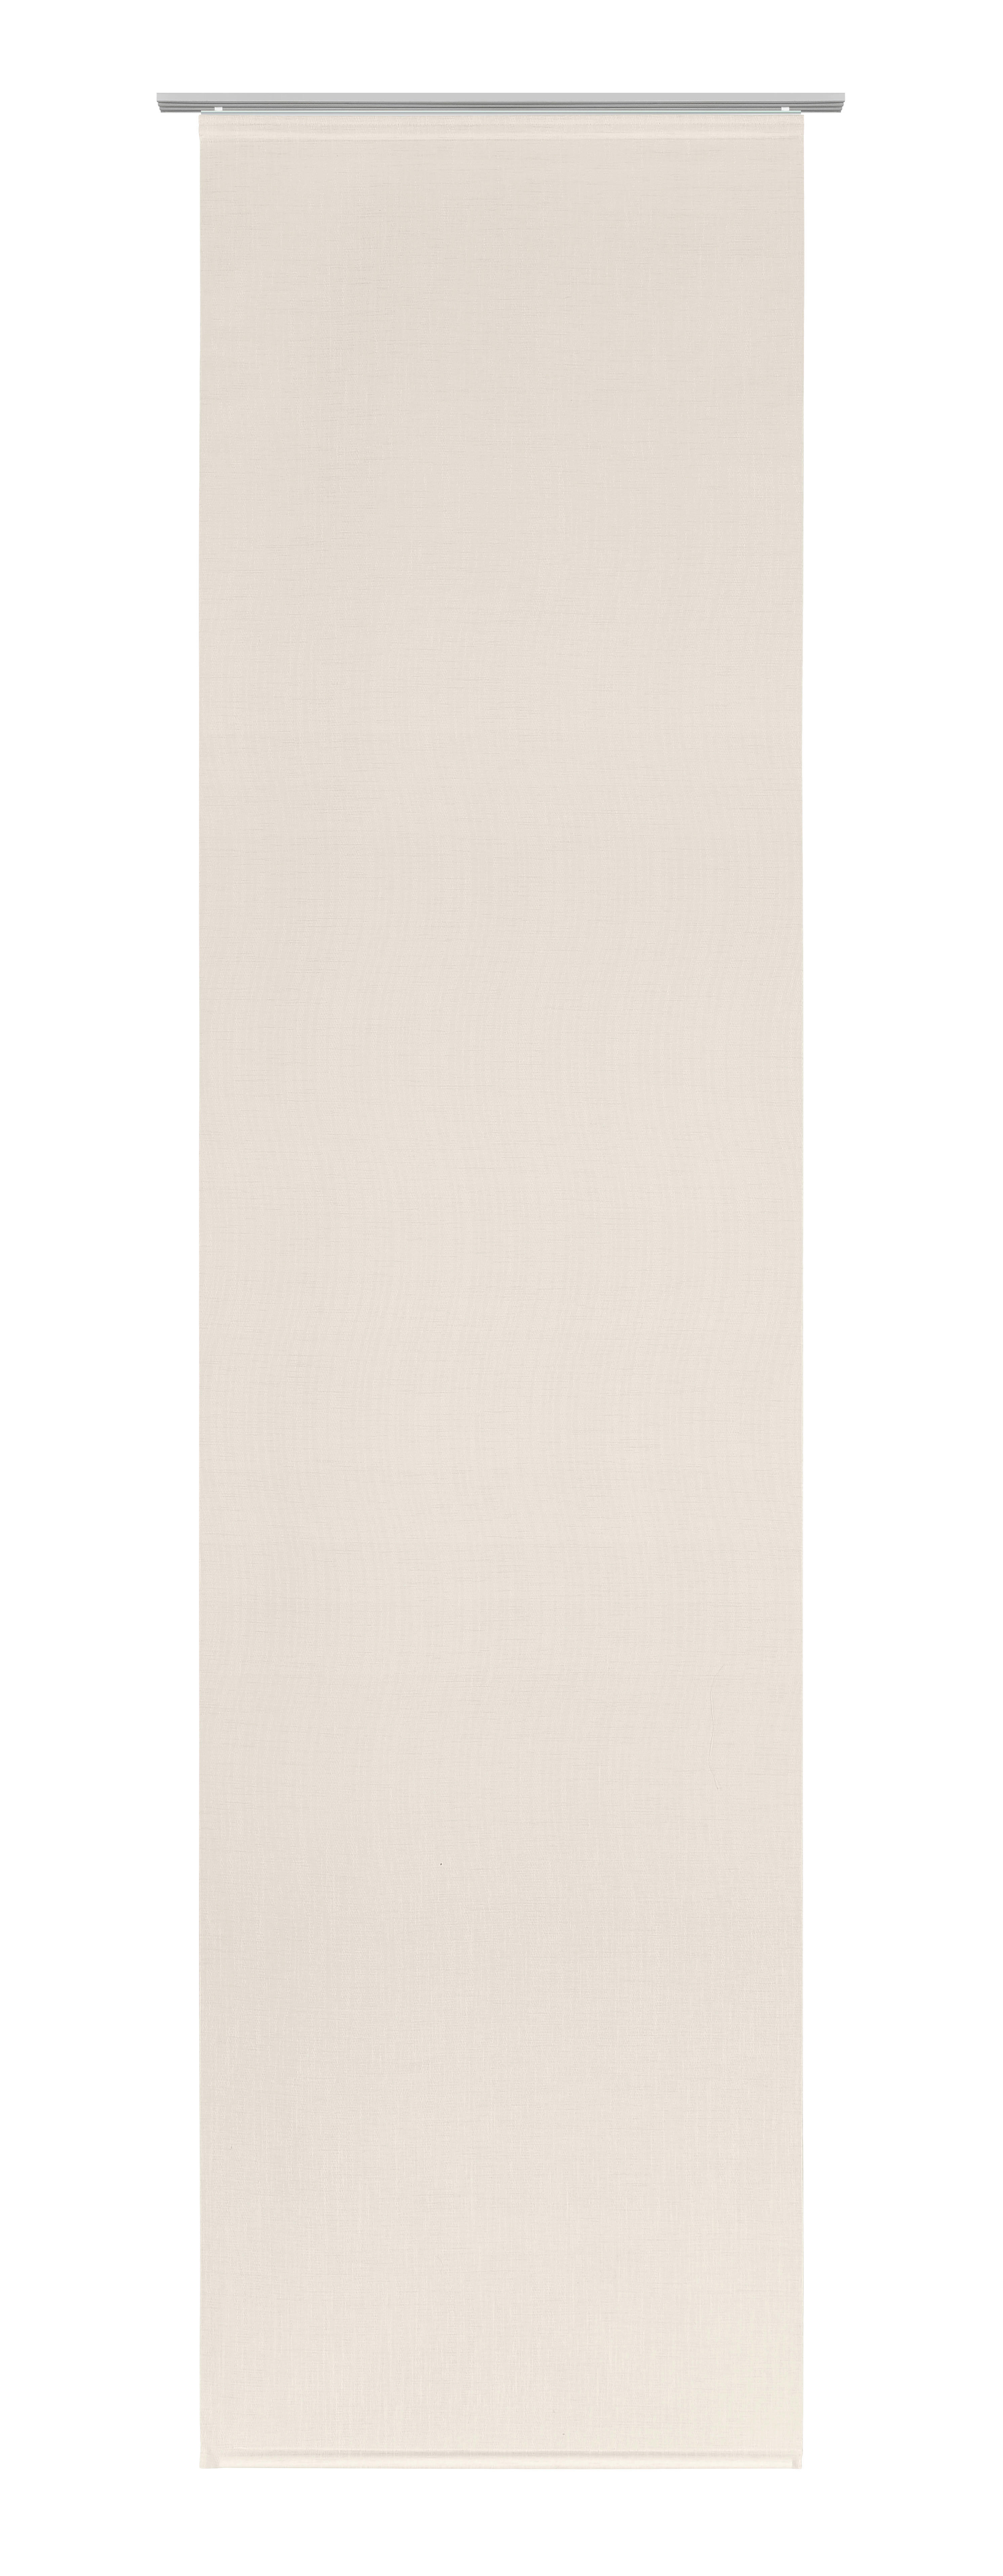 FLÄCHENVORHANG in Beige  - Beige, Design, Textil (60/255cm) - Novel